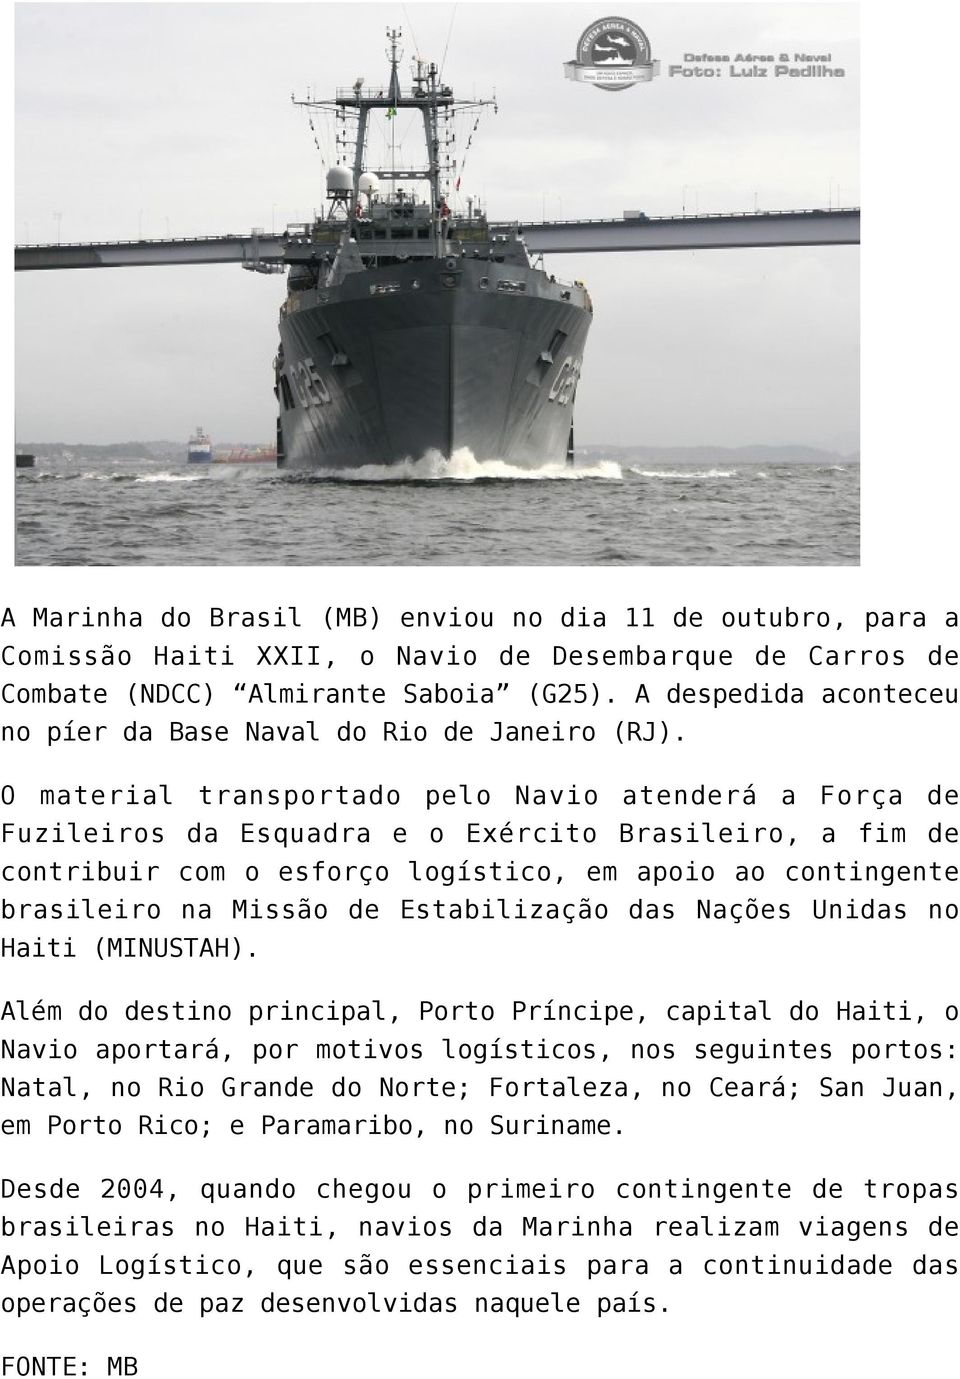 O material transportado pelo Navio atenderá a Força de Fuzileiros da Esquadra e o Exército Brasileiro, a fim de contribuir com o esforço logístico, em apoio ao contingente brasileiro na Missão de